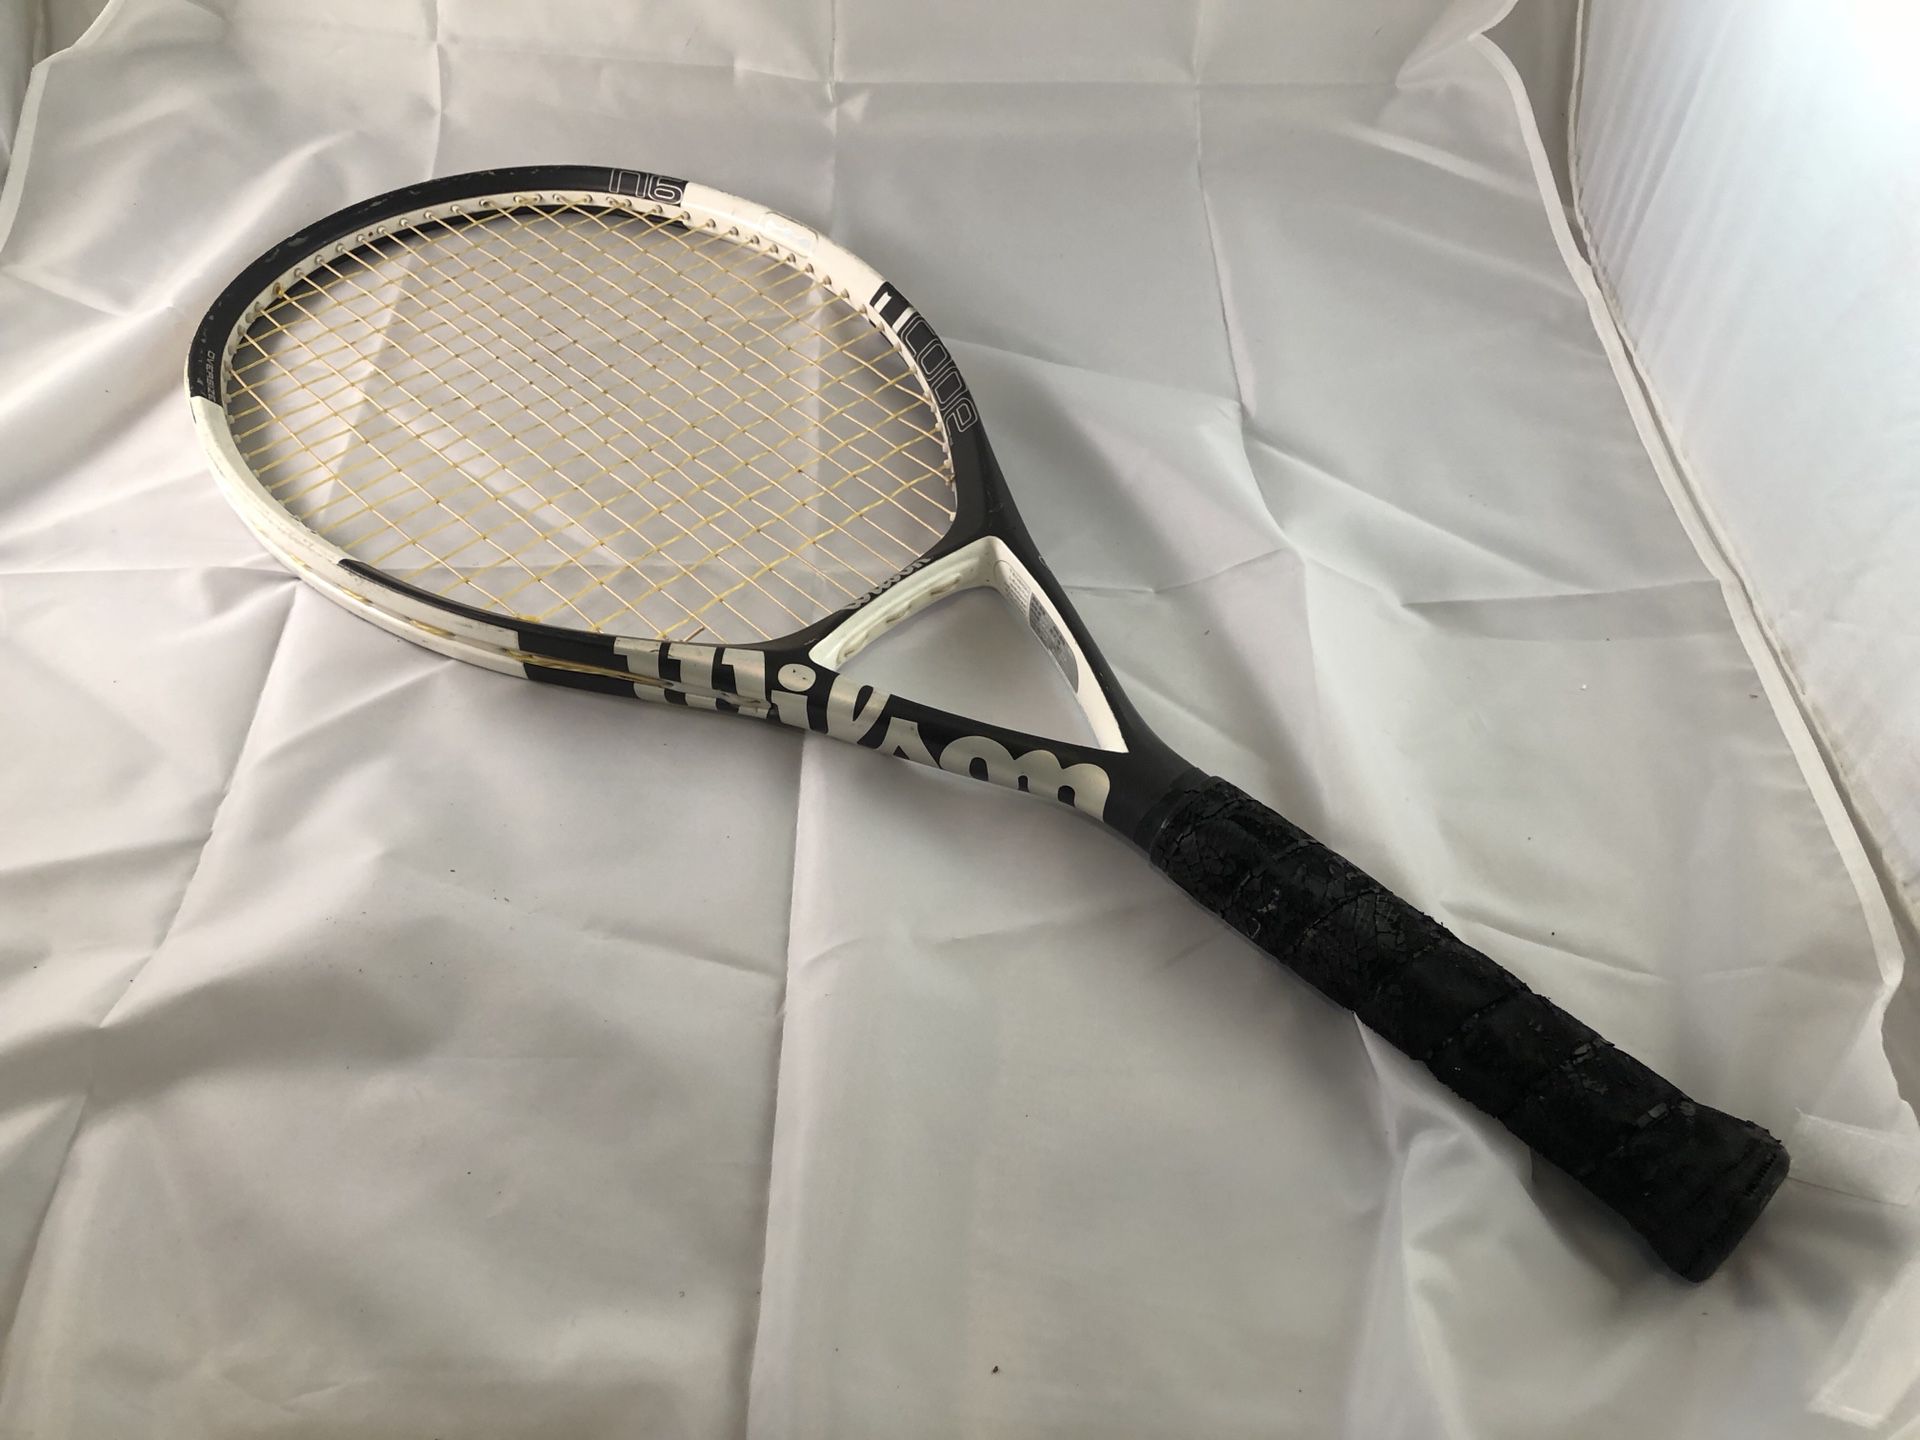 Wilson NCode N6 tennis racket